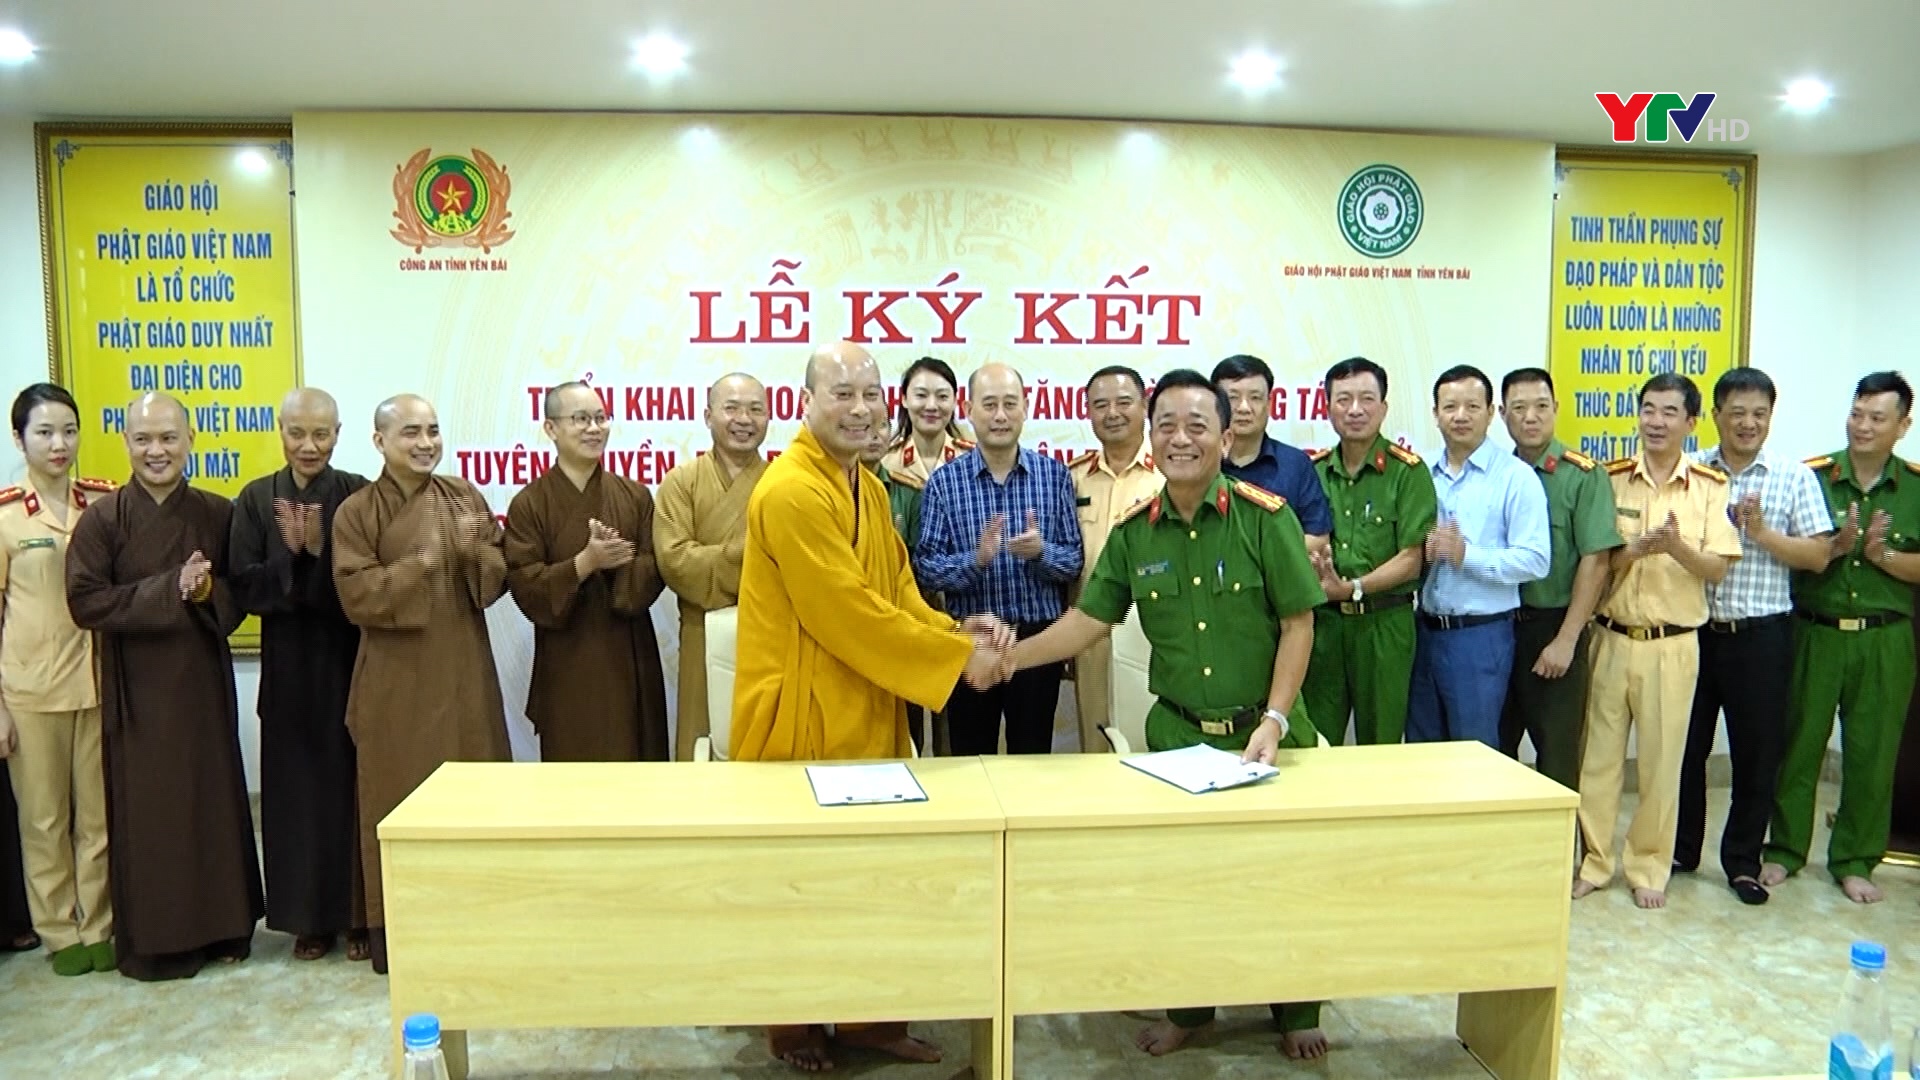 Công an tỉnh và Giáo hội Phật giáo Việt Nam tỉnh Yên Bái ký kết đảm bảo trật tự an toàn giao thông